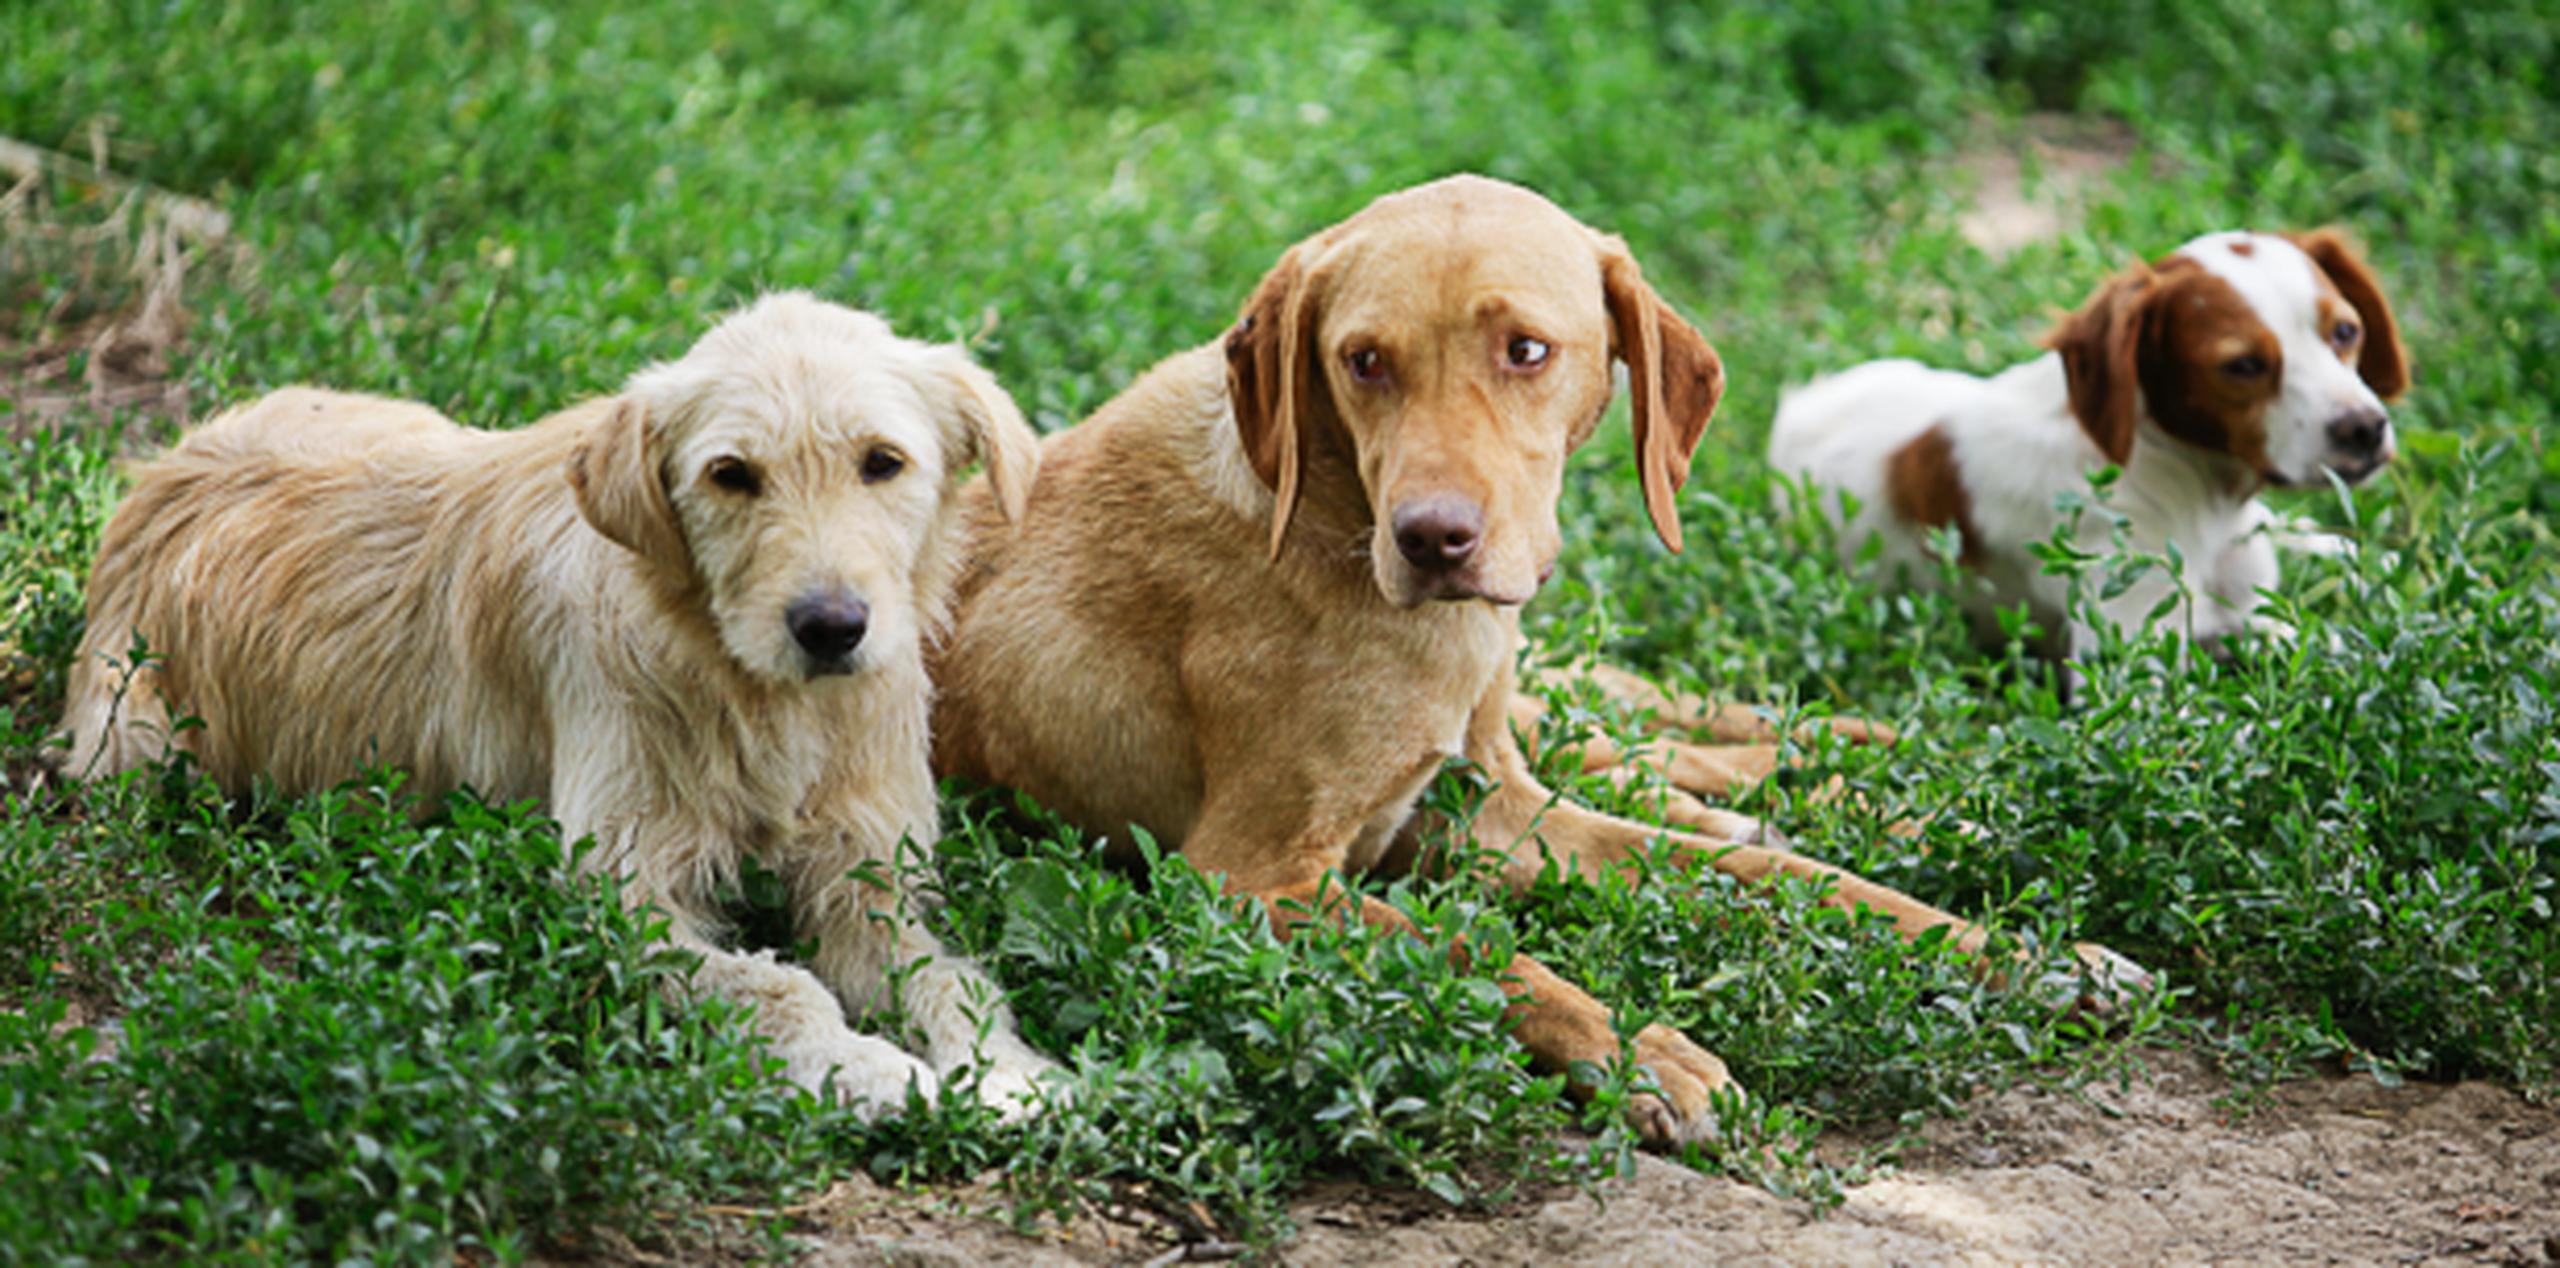 Los síntomas de la infección incluyen tos, congestión nasal y fiebre, aunque no todos los perros con la enfermedad los presentan necesariamente. (Archivo)